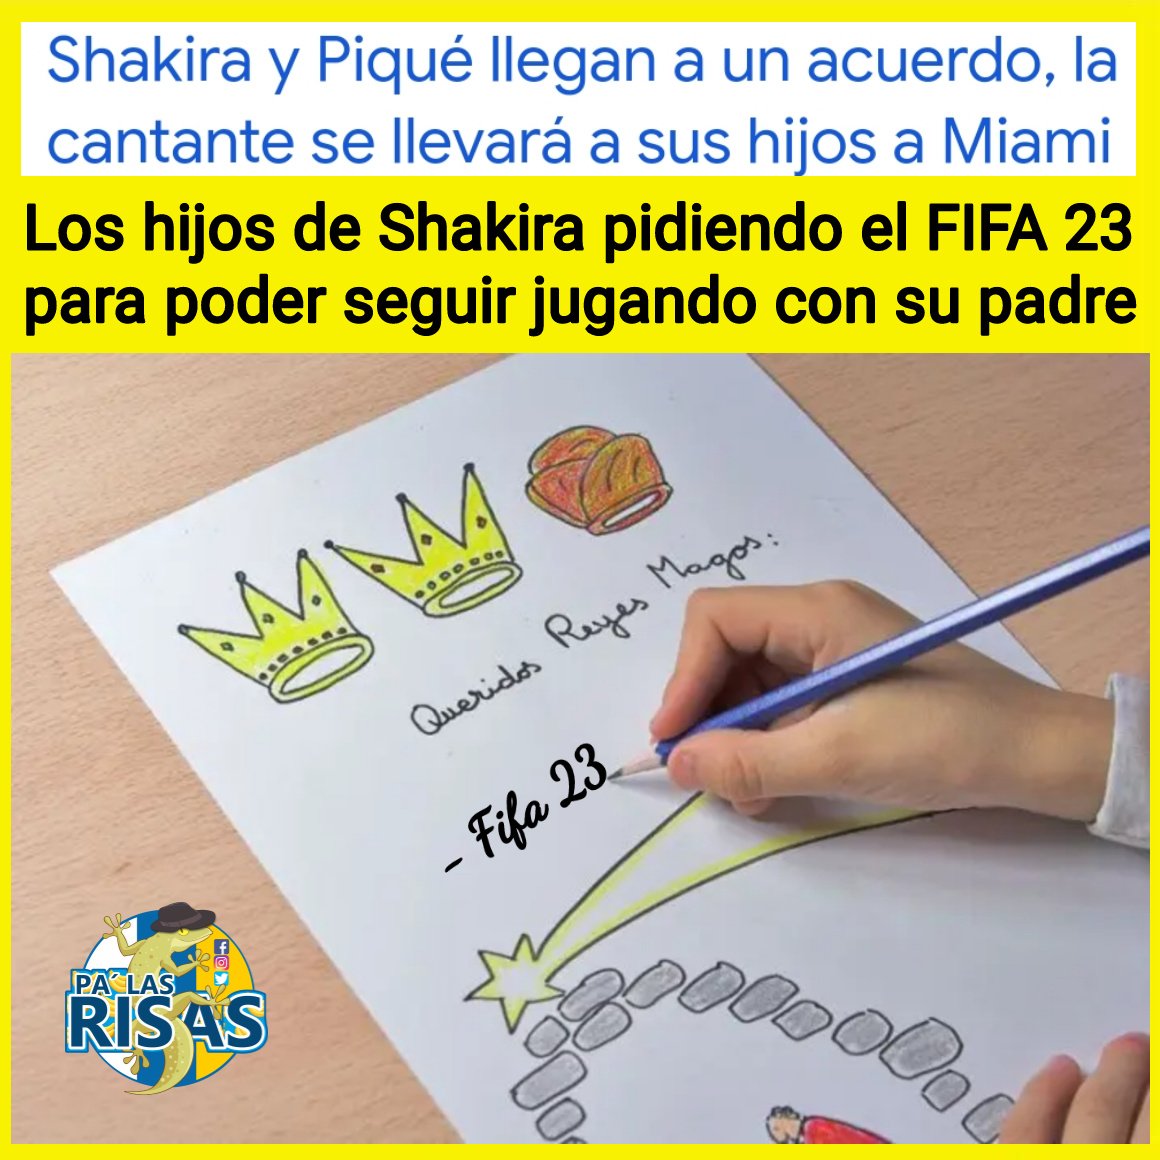 Está pasando... #Memes #Shakira #Pique #futbol